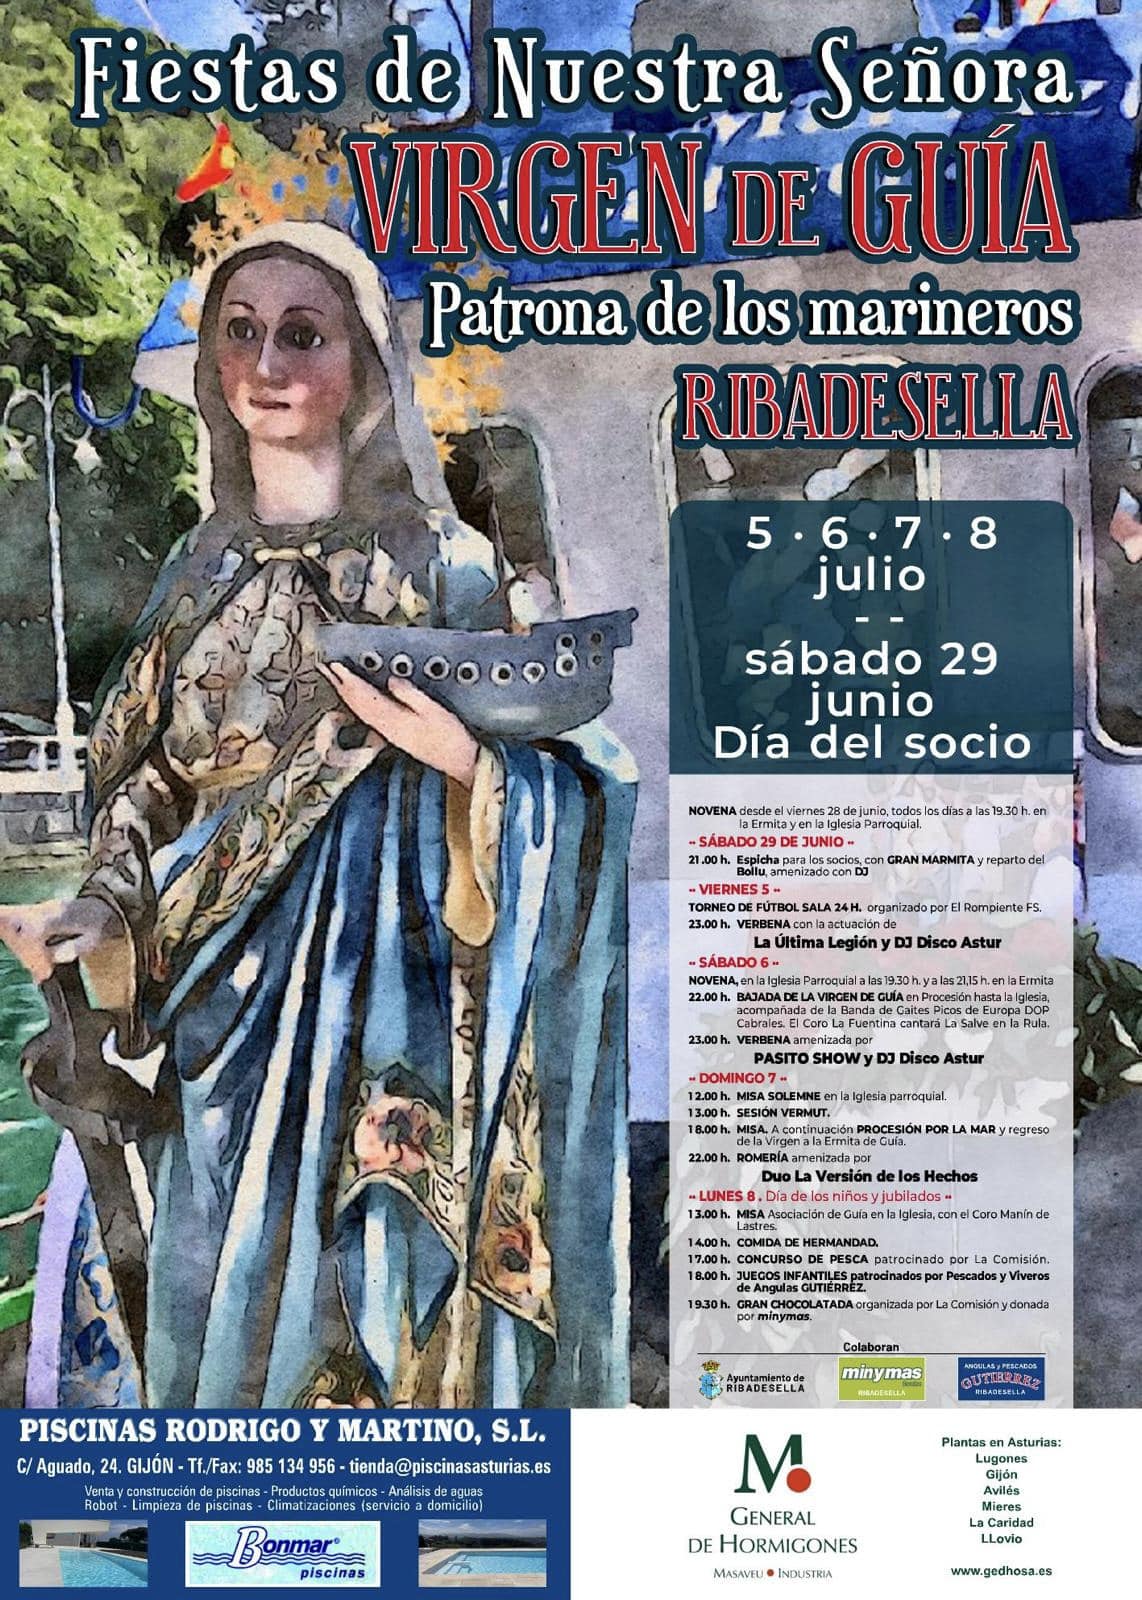 Señora Virgen de Guía .